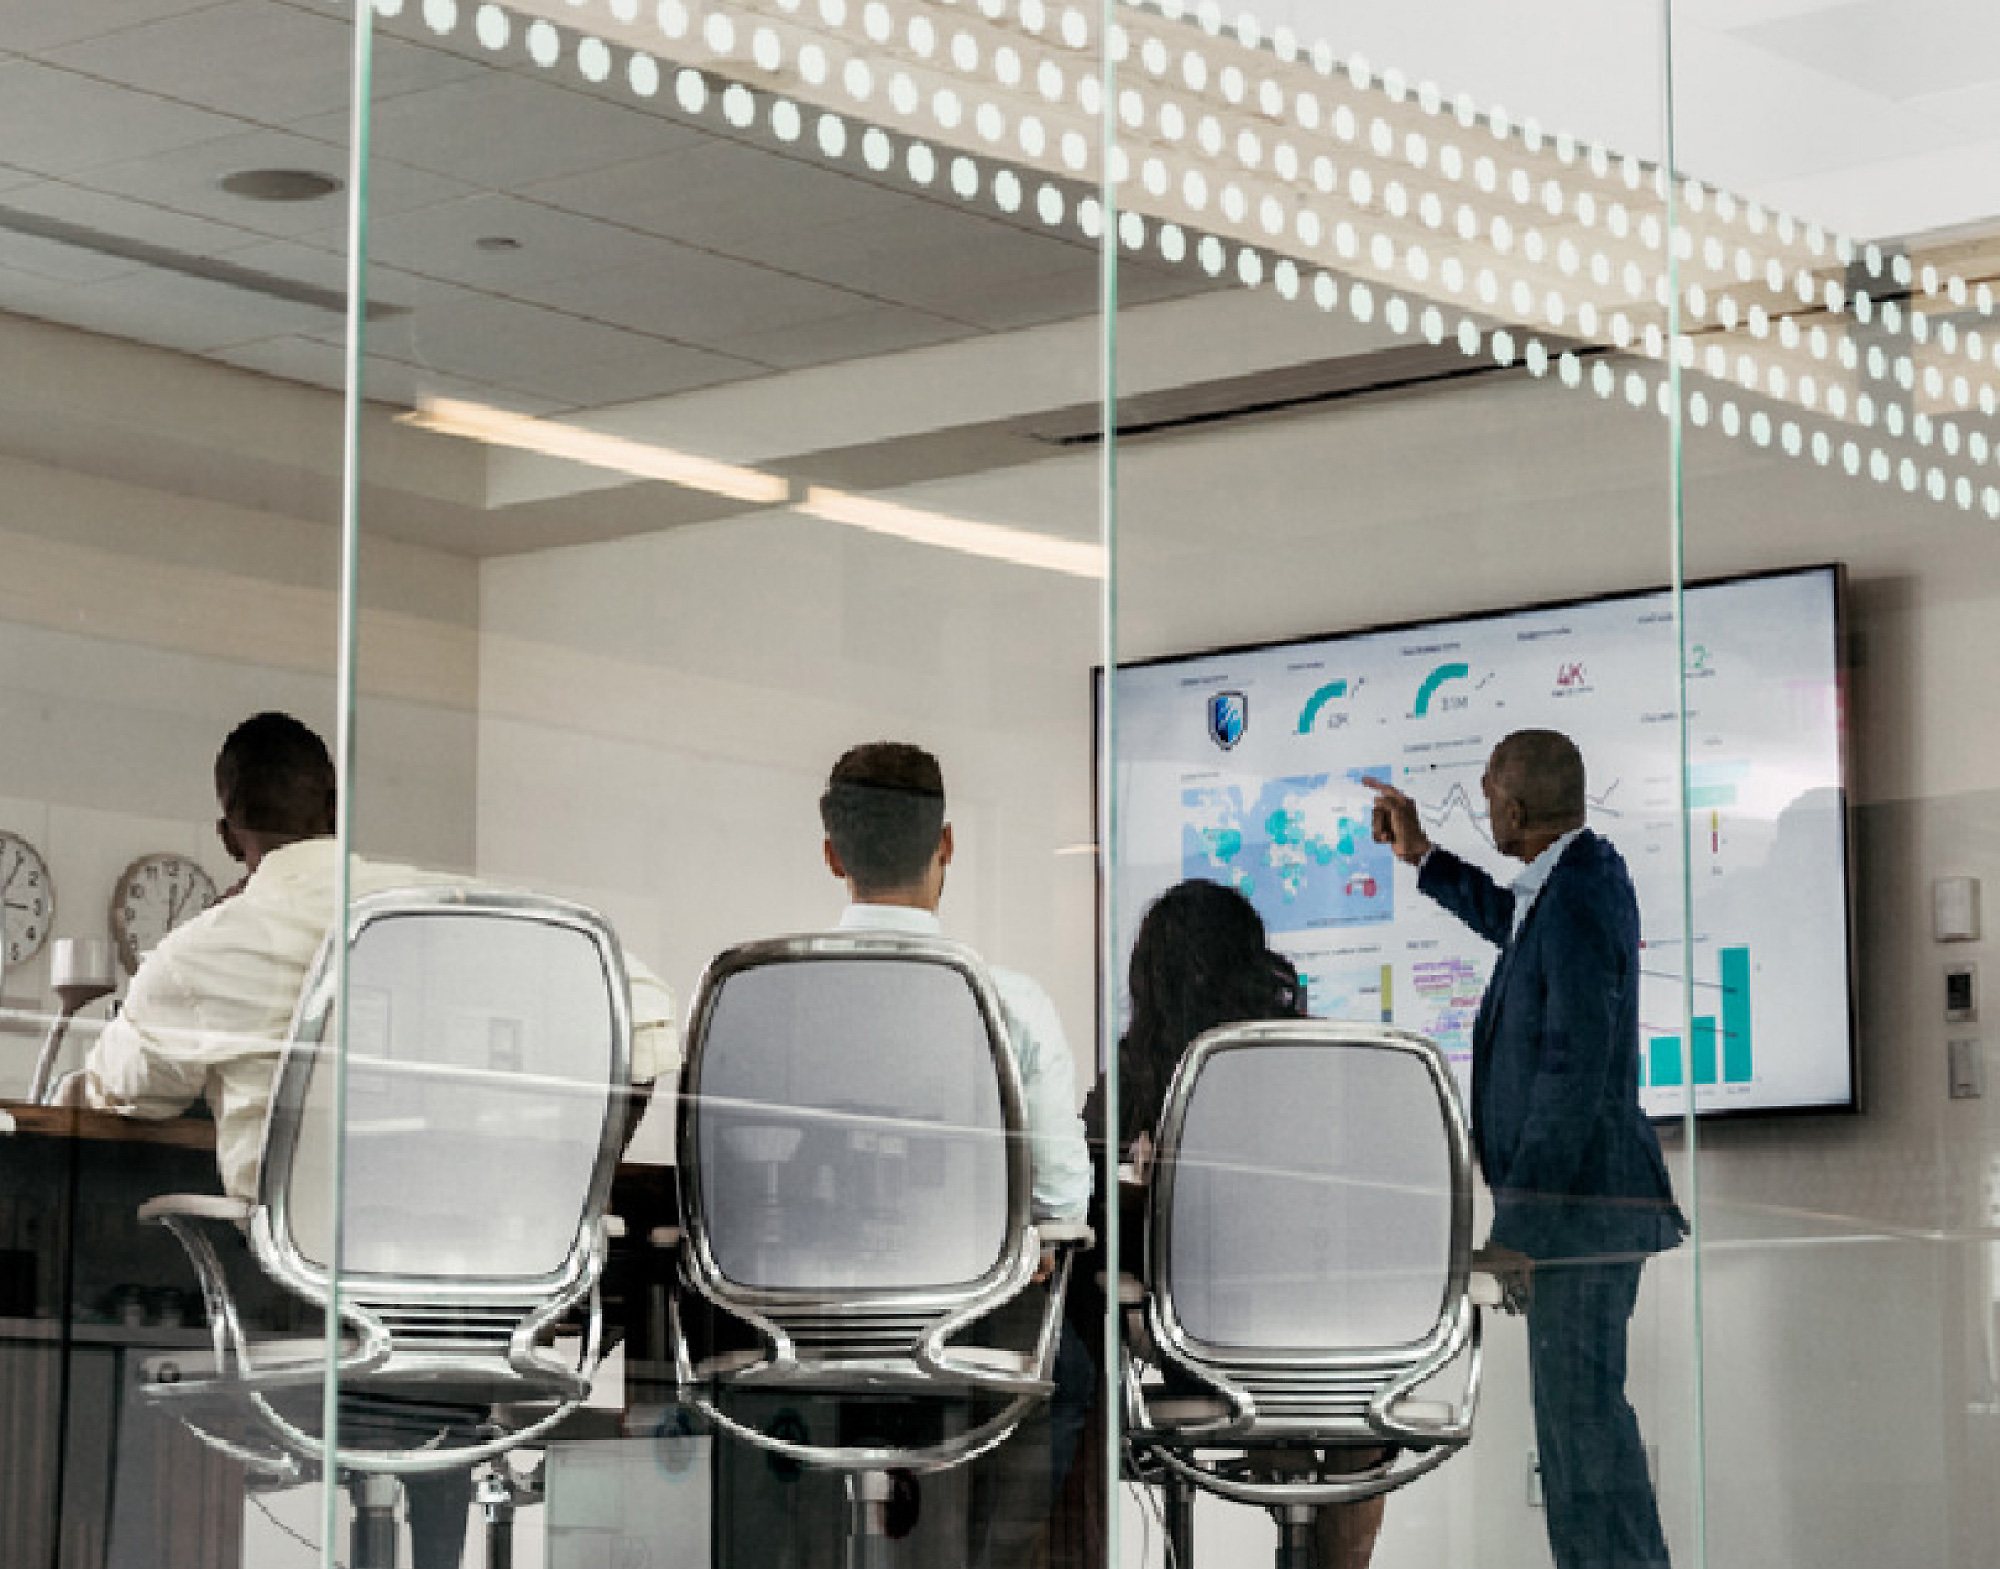 Quatre professionnels dans une salle de réunion, l’un pointant vers les données numériques affichées sur un grand écran, vu à travers une paroi en verre.